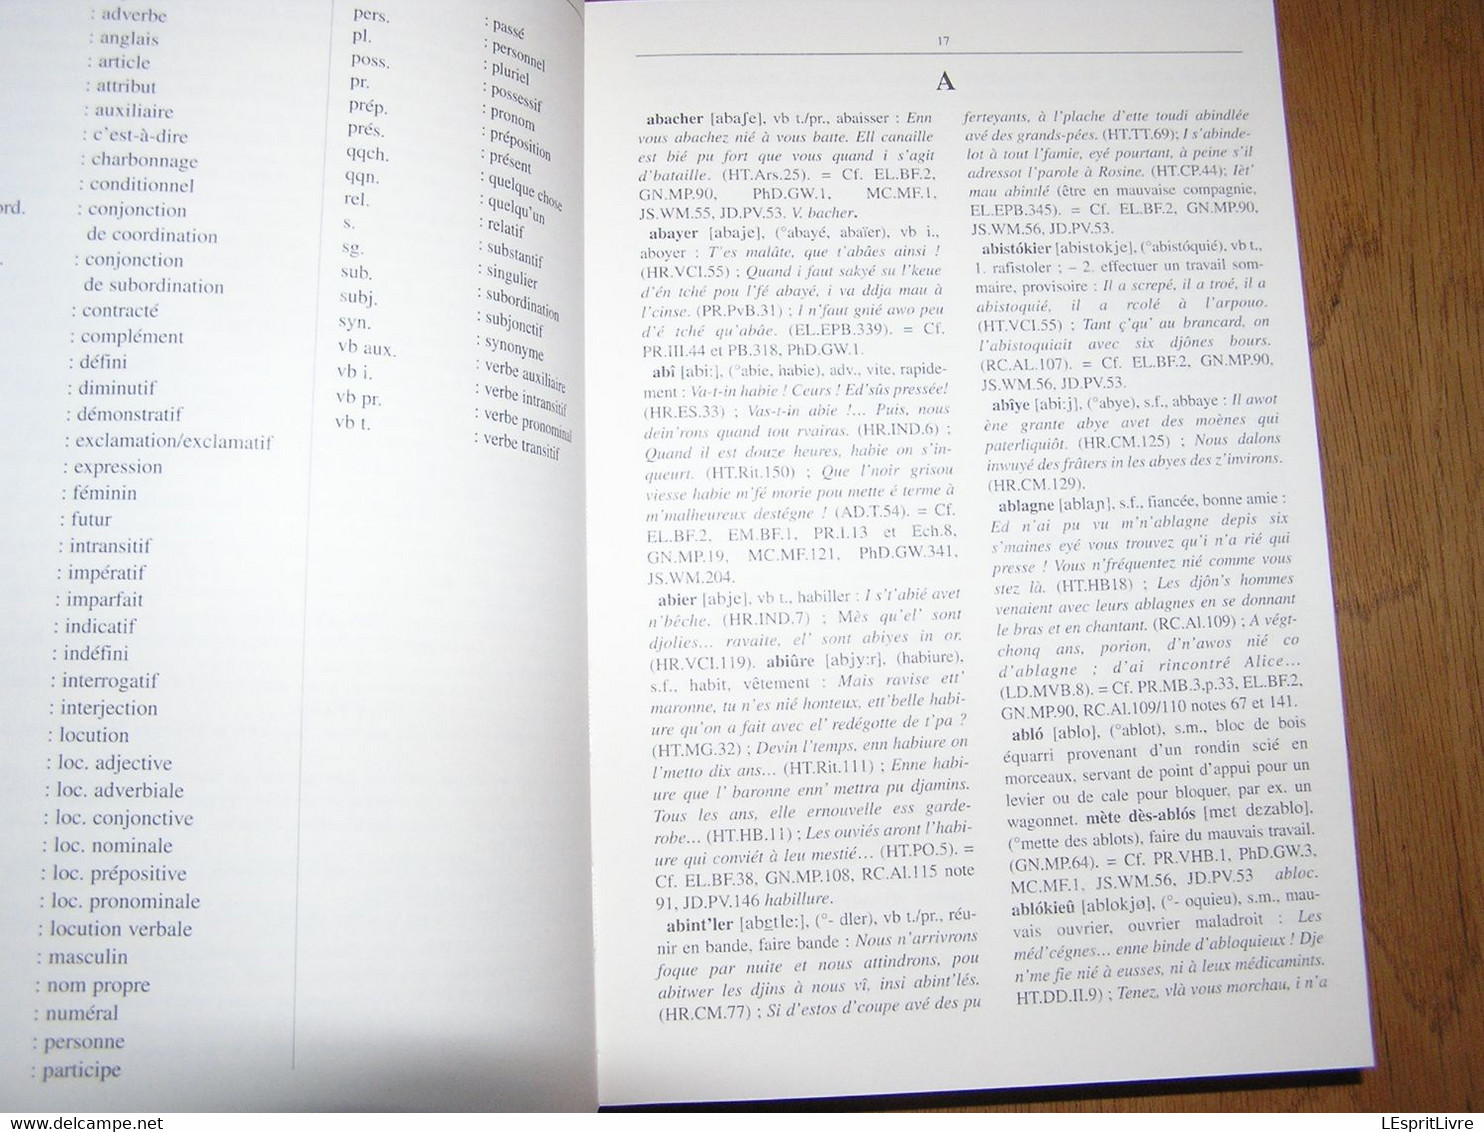 ESSAI D'ILLUSTRATION DU PARLER BORAIN Dictionnaire Capron Nisolle Régionalisme Hainaut Borinage Patois Dialecte Wallon - Belgium